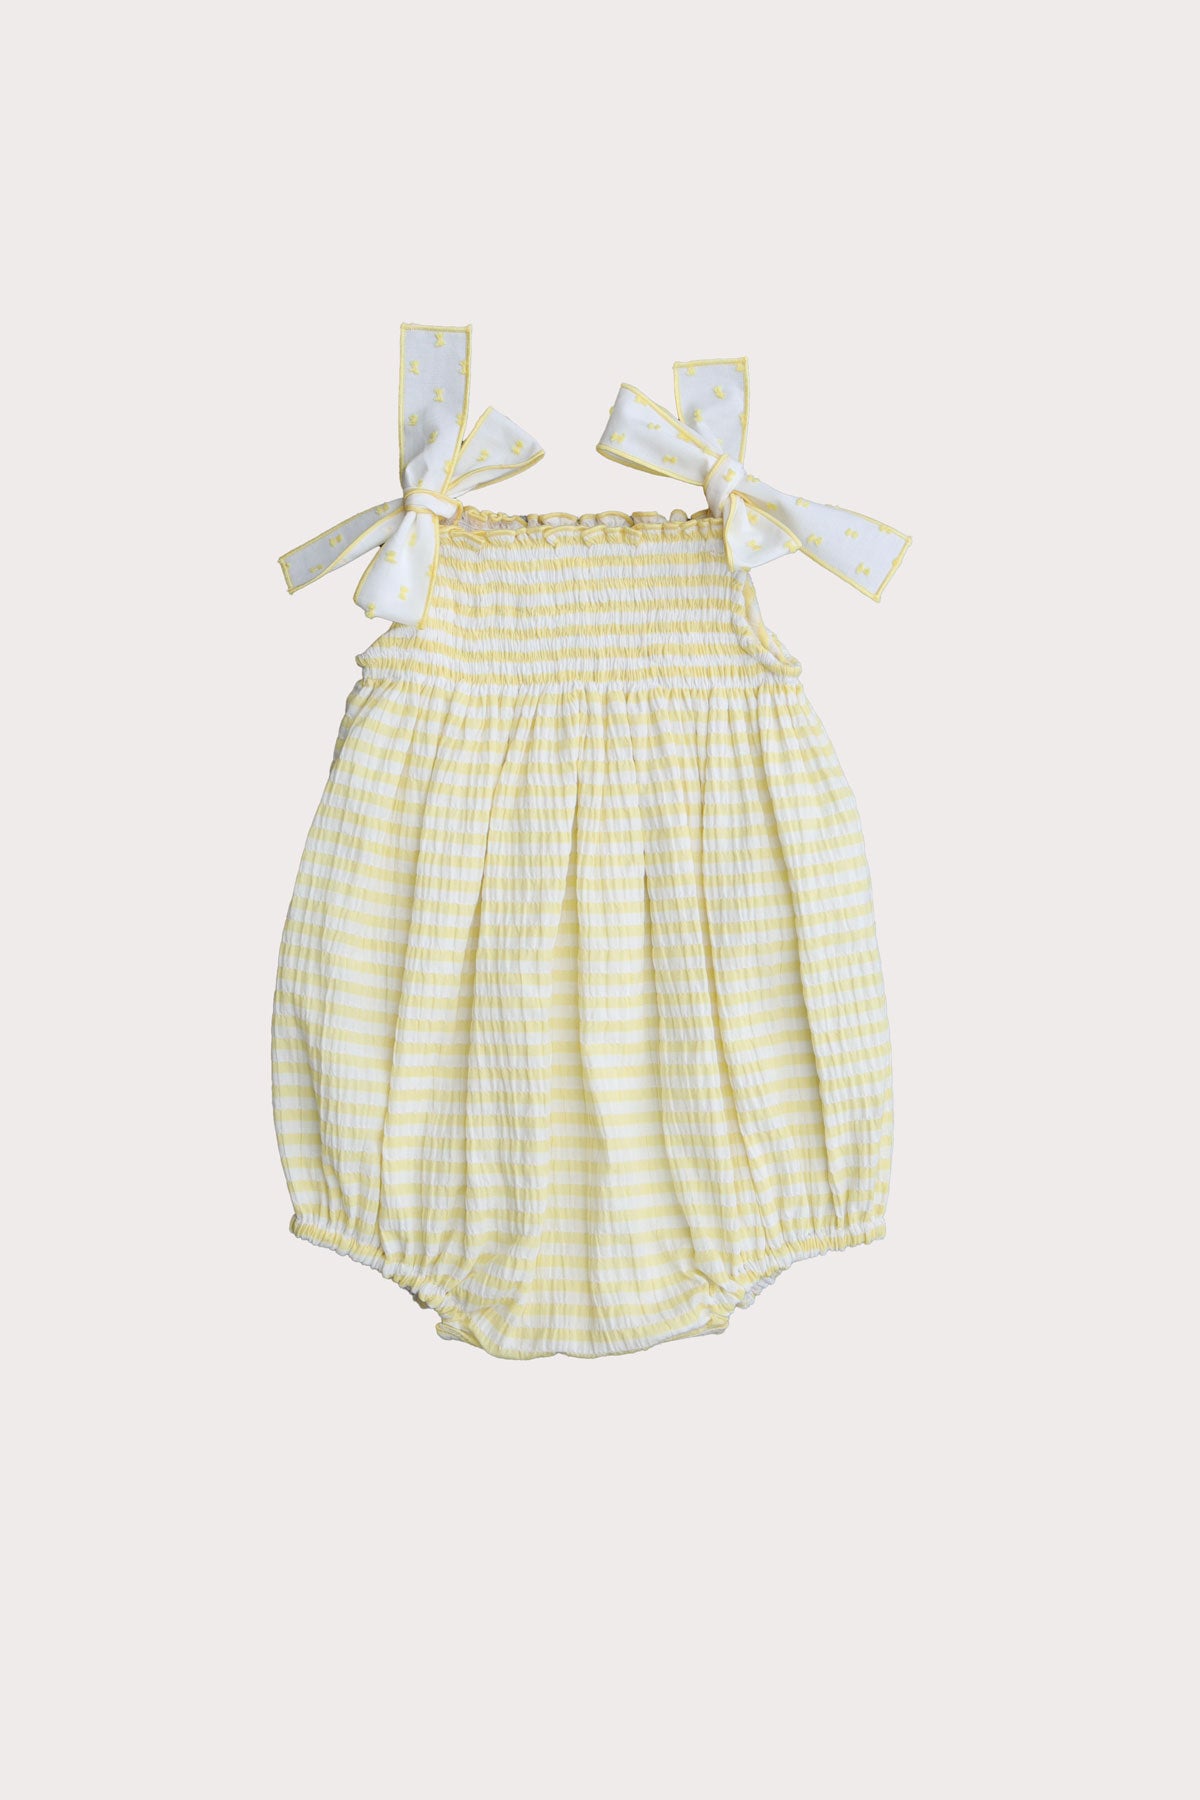 lemon striped baby girl romper